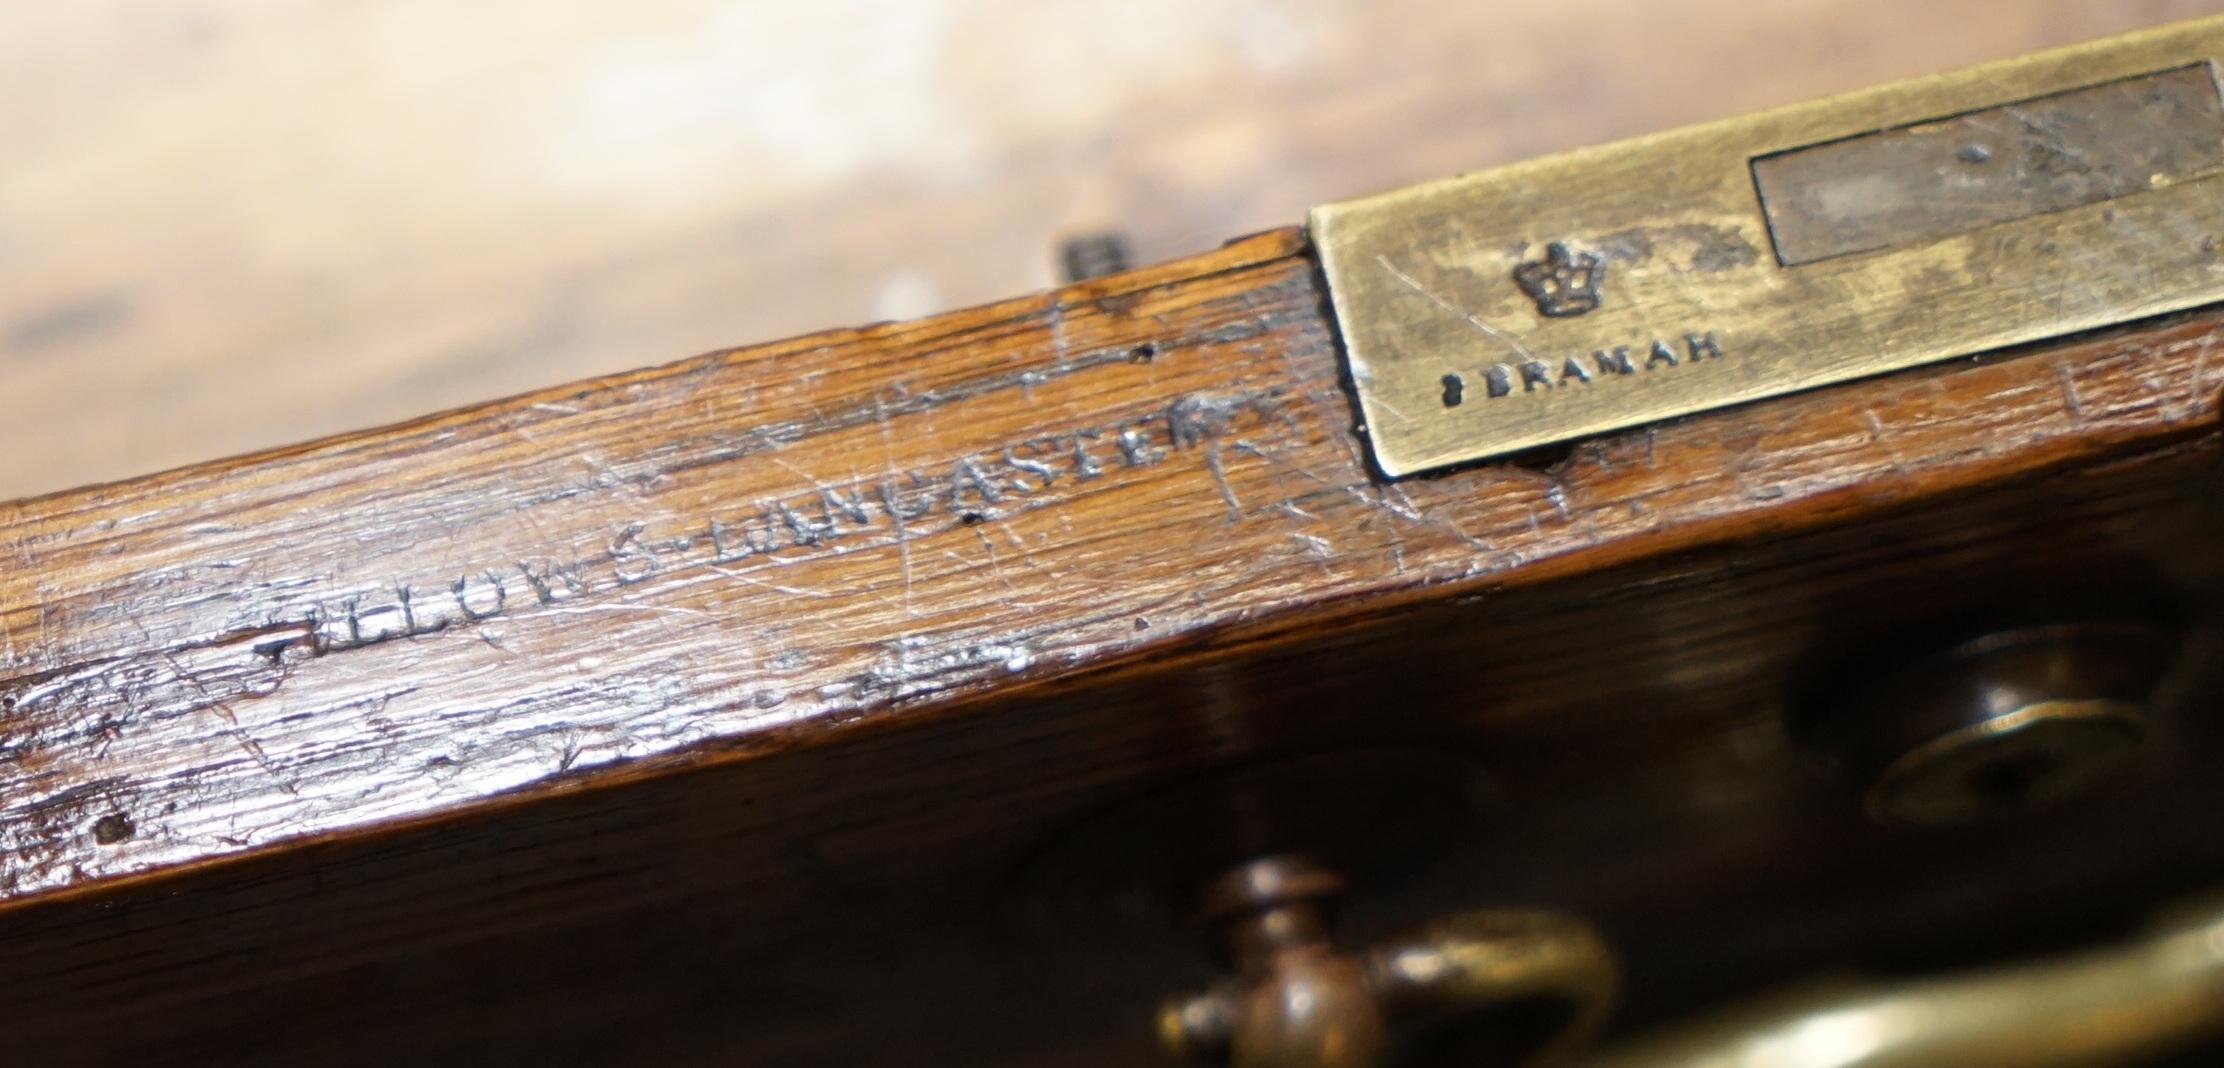 Wir freuen uns, diesen atemberaubenden und außergewöhnlich seltenen Gillows Lancaster Schreibtisch mit zwei Sockeln in getäfelter, gemaserter Eiche zum Verkauf anbieten zu können

Ein außergewöhnlich seltenes Beispiel für einen frühviktorianischen